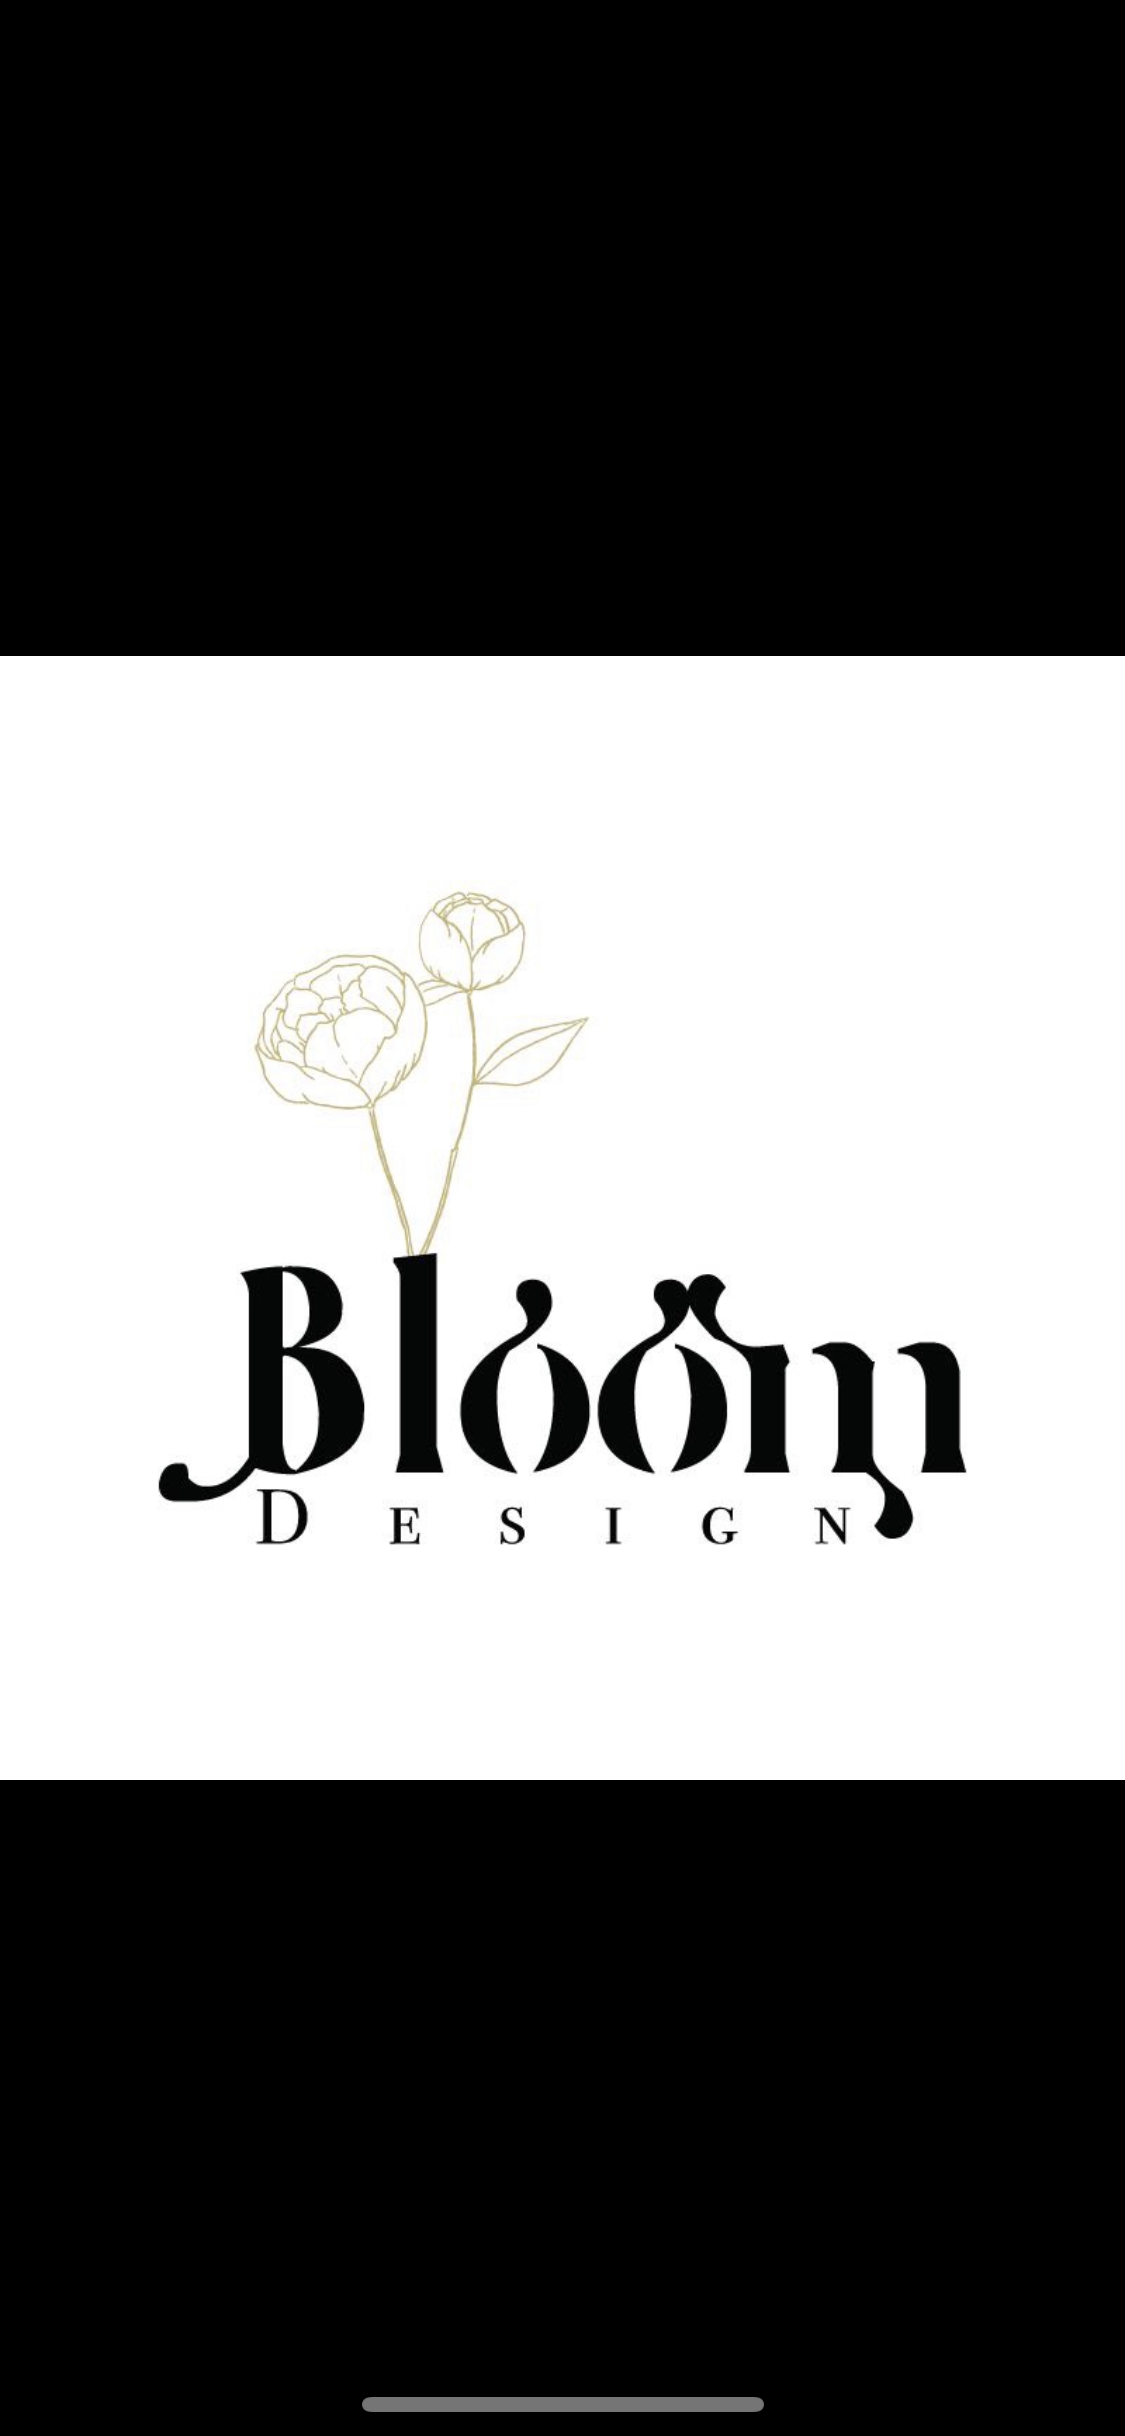 Bloom design 1